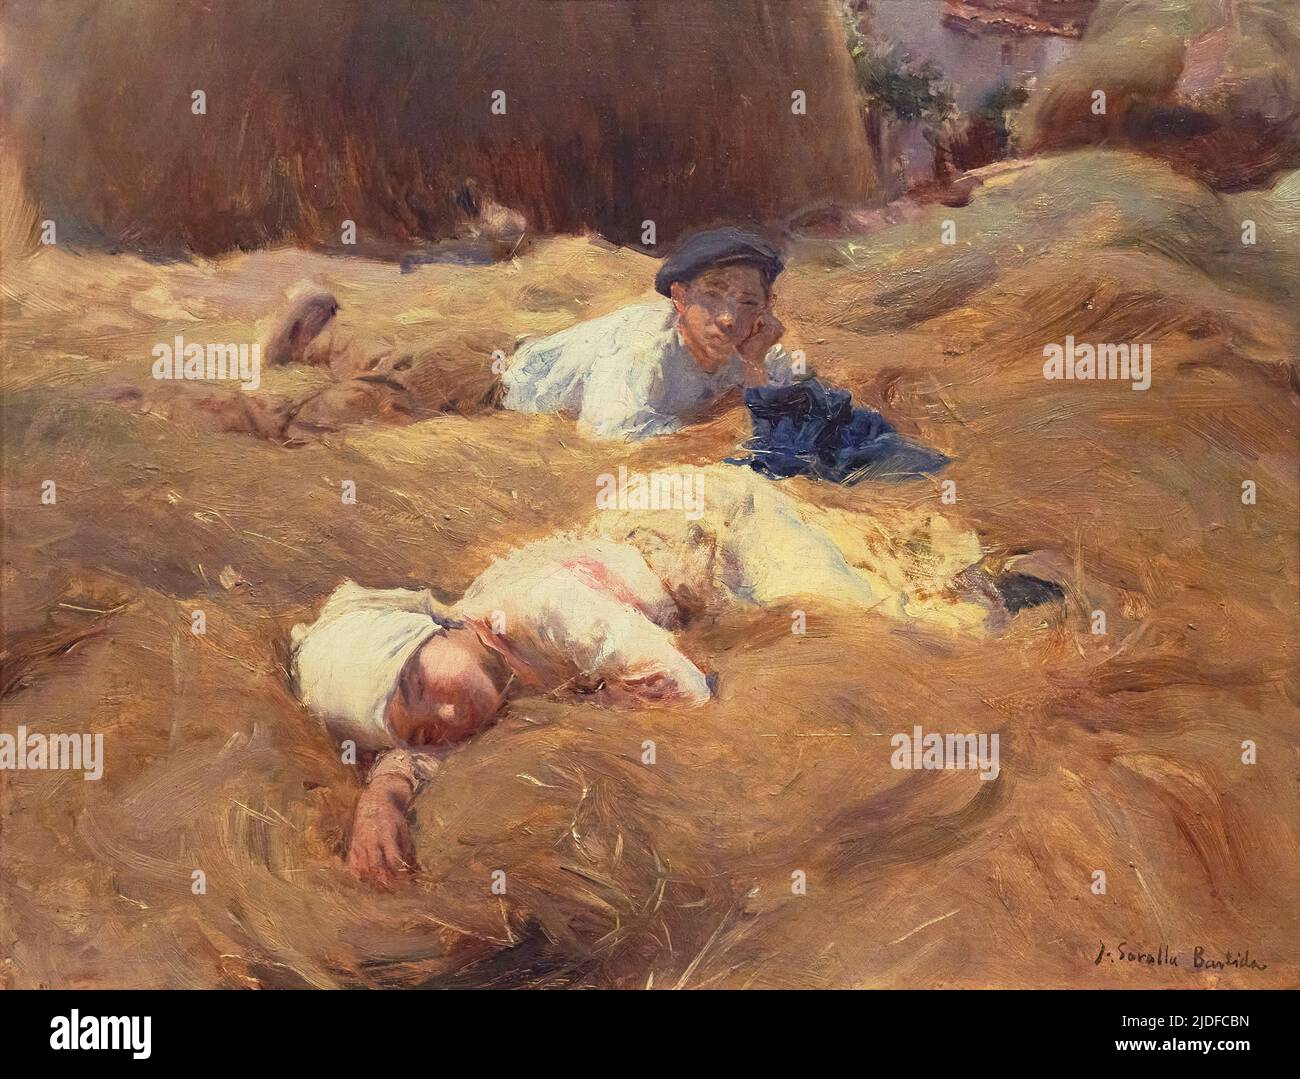 Joaquin Sorolla y Bastida (1863-1923). The nap, Asturias (La siesta, Asturias). 1903. Oil on panel. 36 x 46 cm.  Joaquin Sorolla y Bastida was a Spani Stock Photo